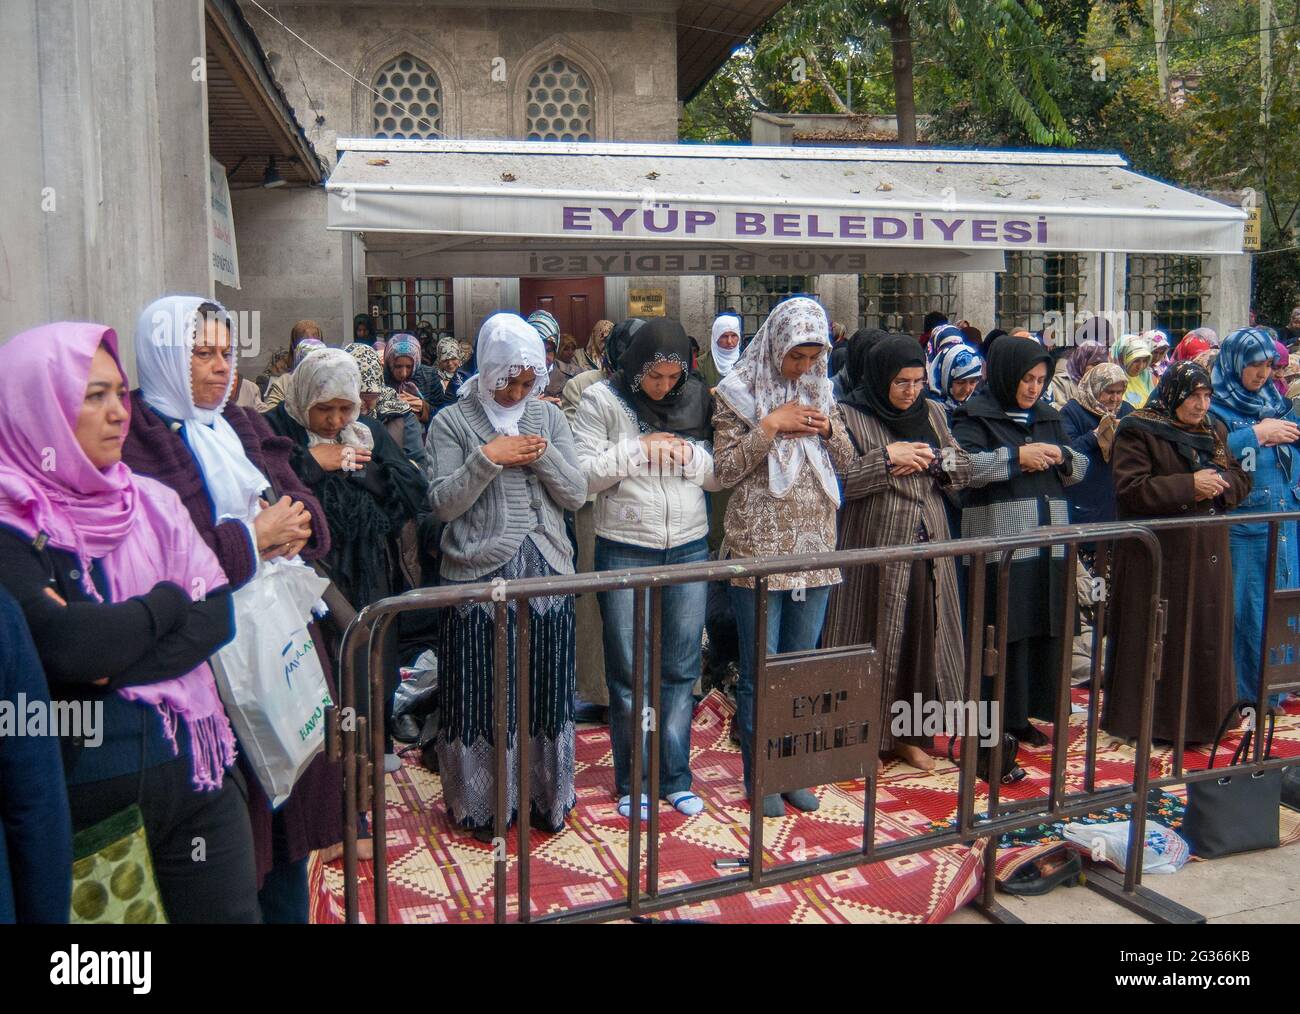 Eyup Sultan,İstanbul/Turchia -11/07/2008 : donne musulmane che pregano alla Moschea del Sultano di Eyup Foto Stock